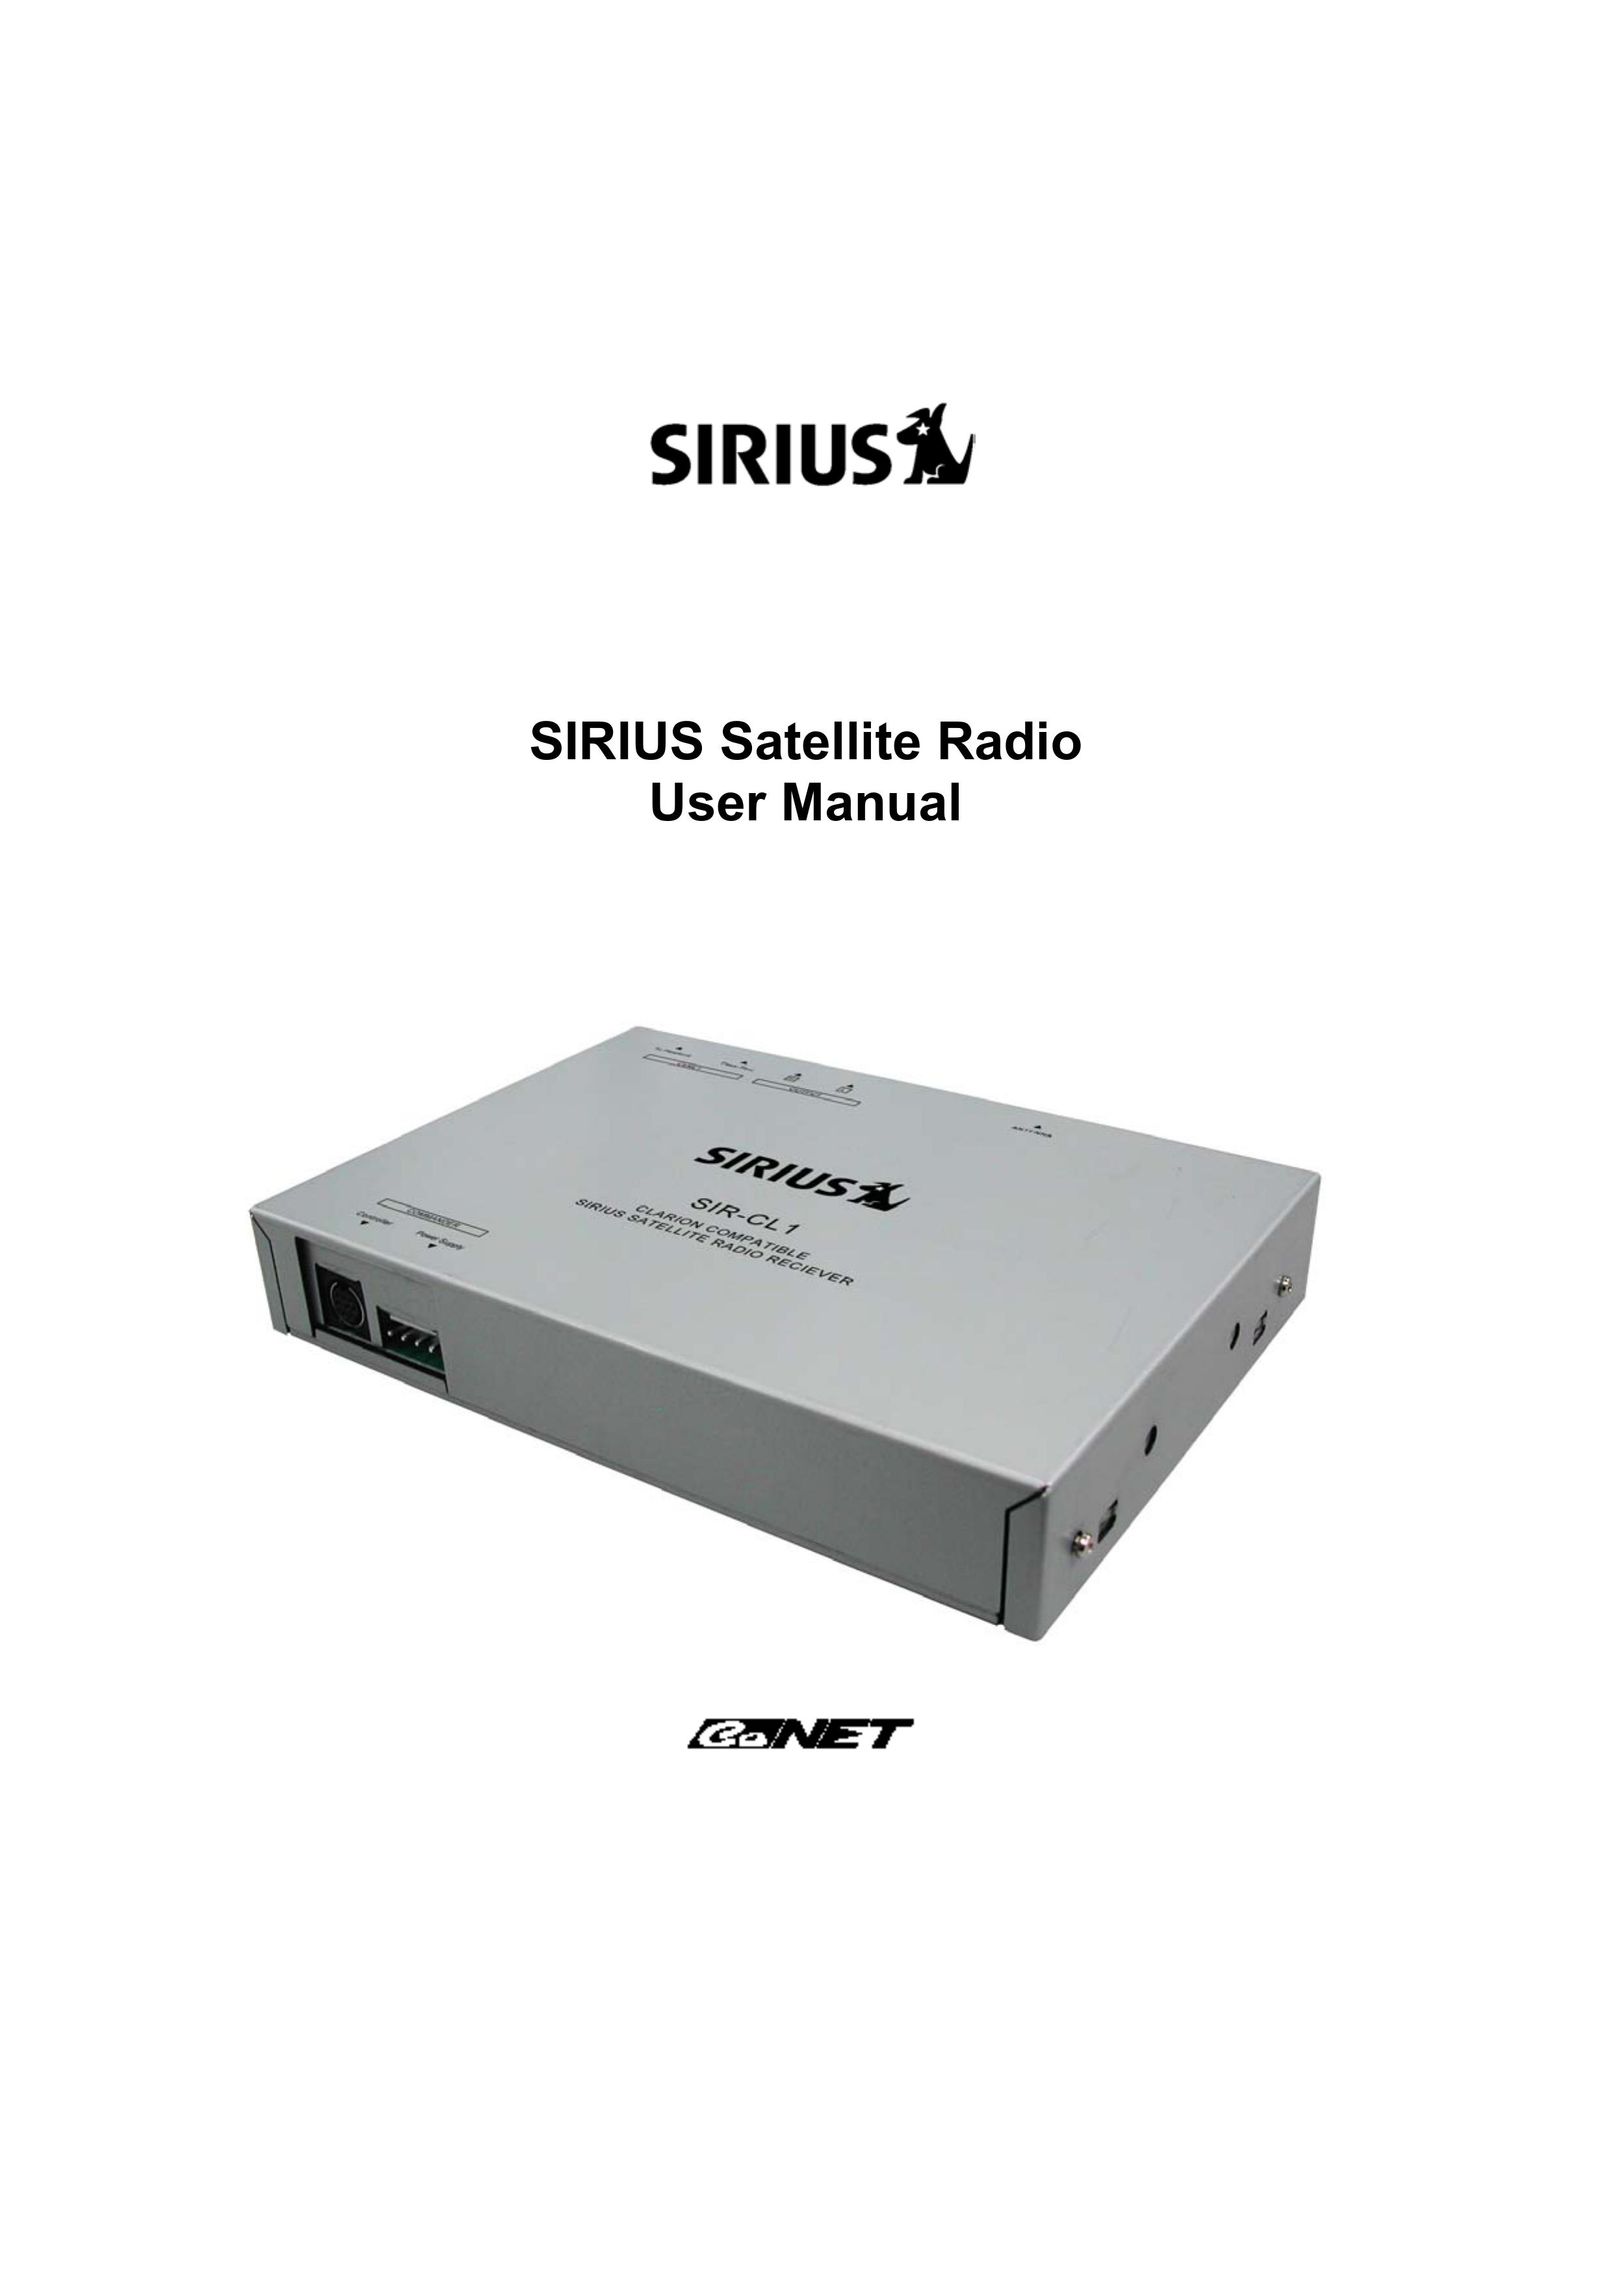 Sirius Satellite Radio SIR-CL1 Car Satellite Radio System User Manual